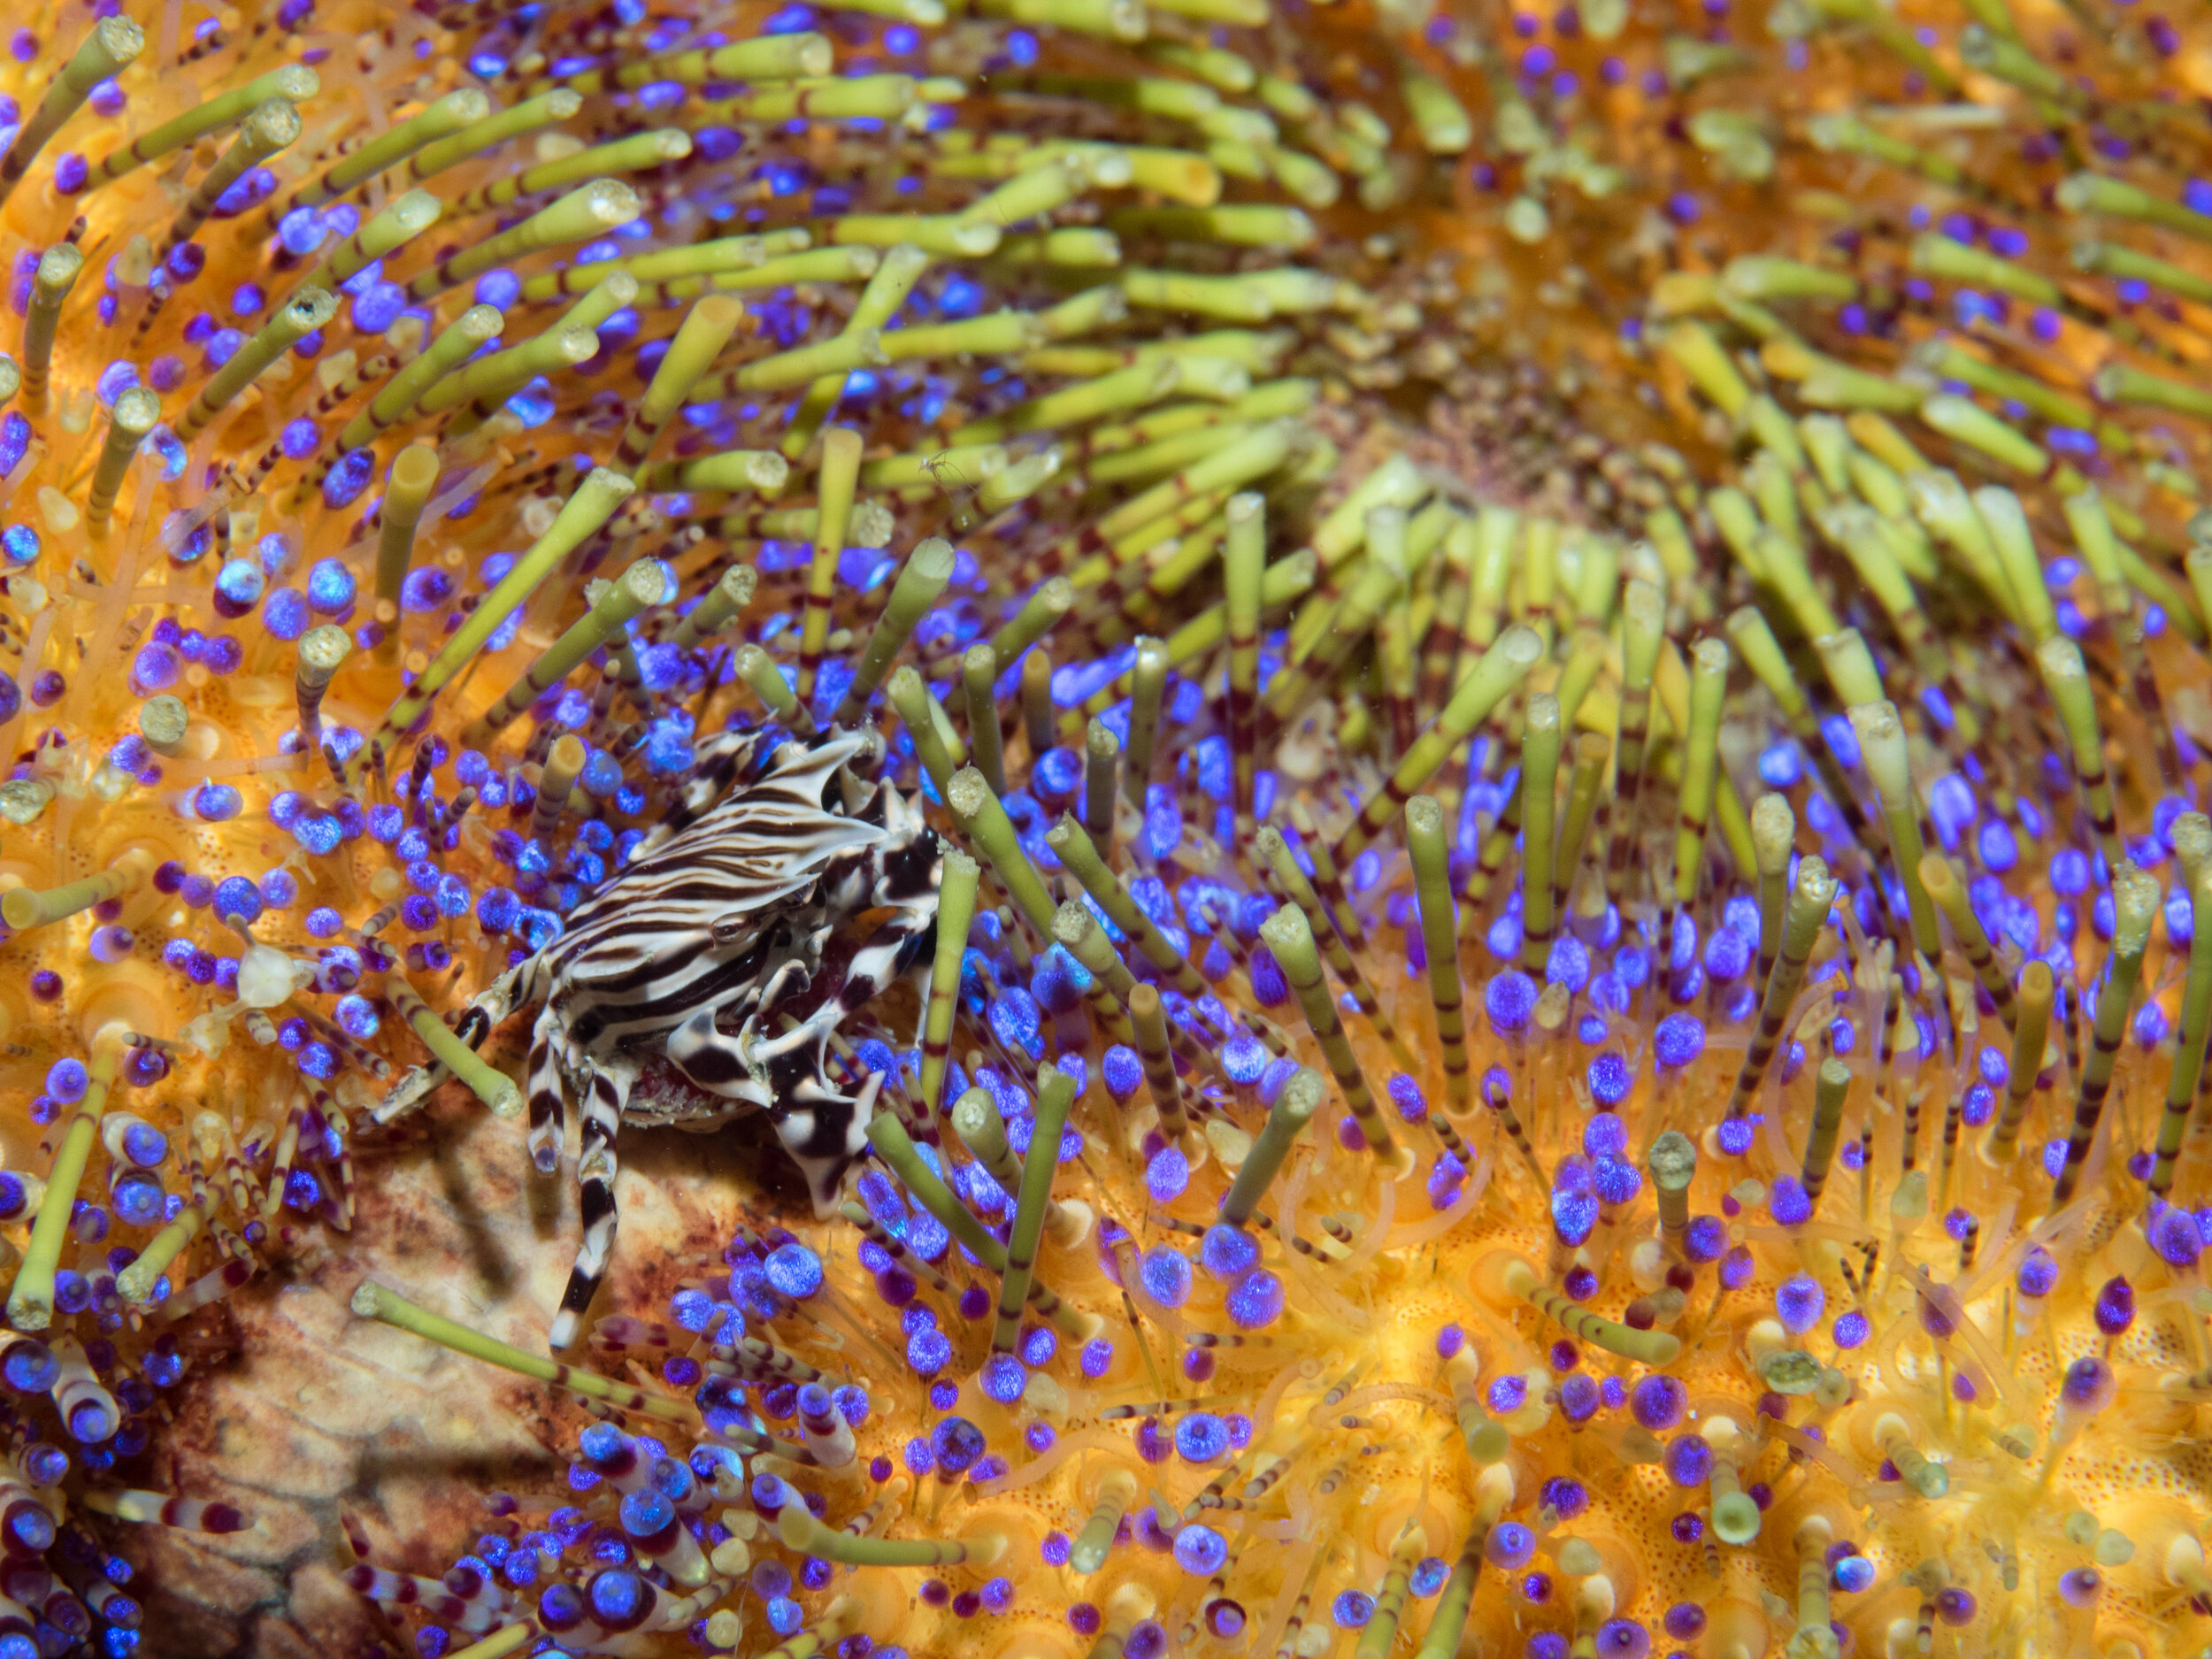 Zebra Shrimp on Fire Urchin.jpg